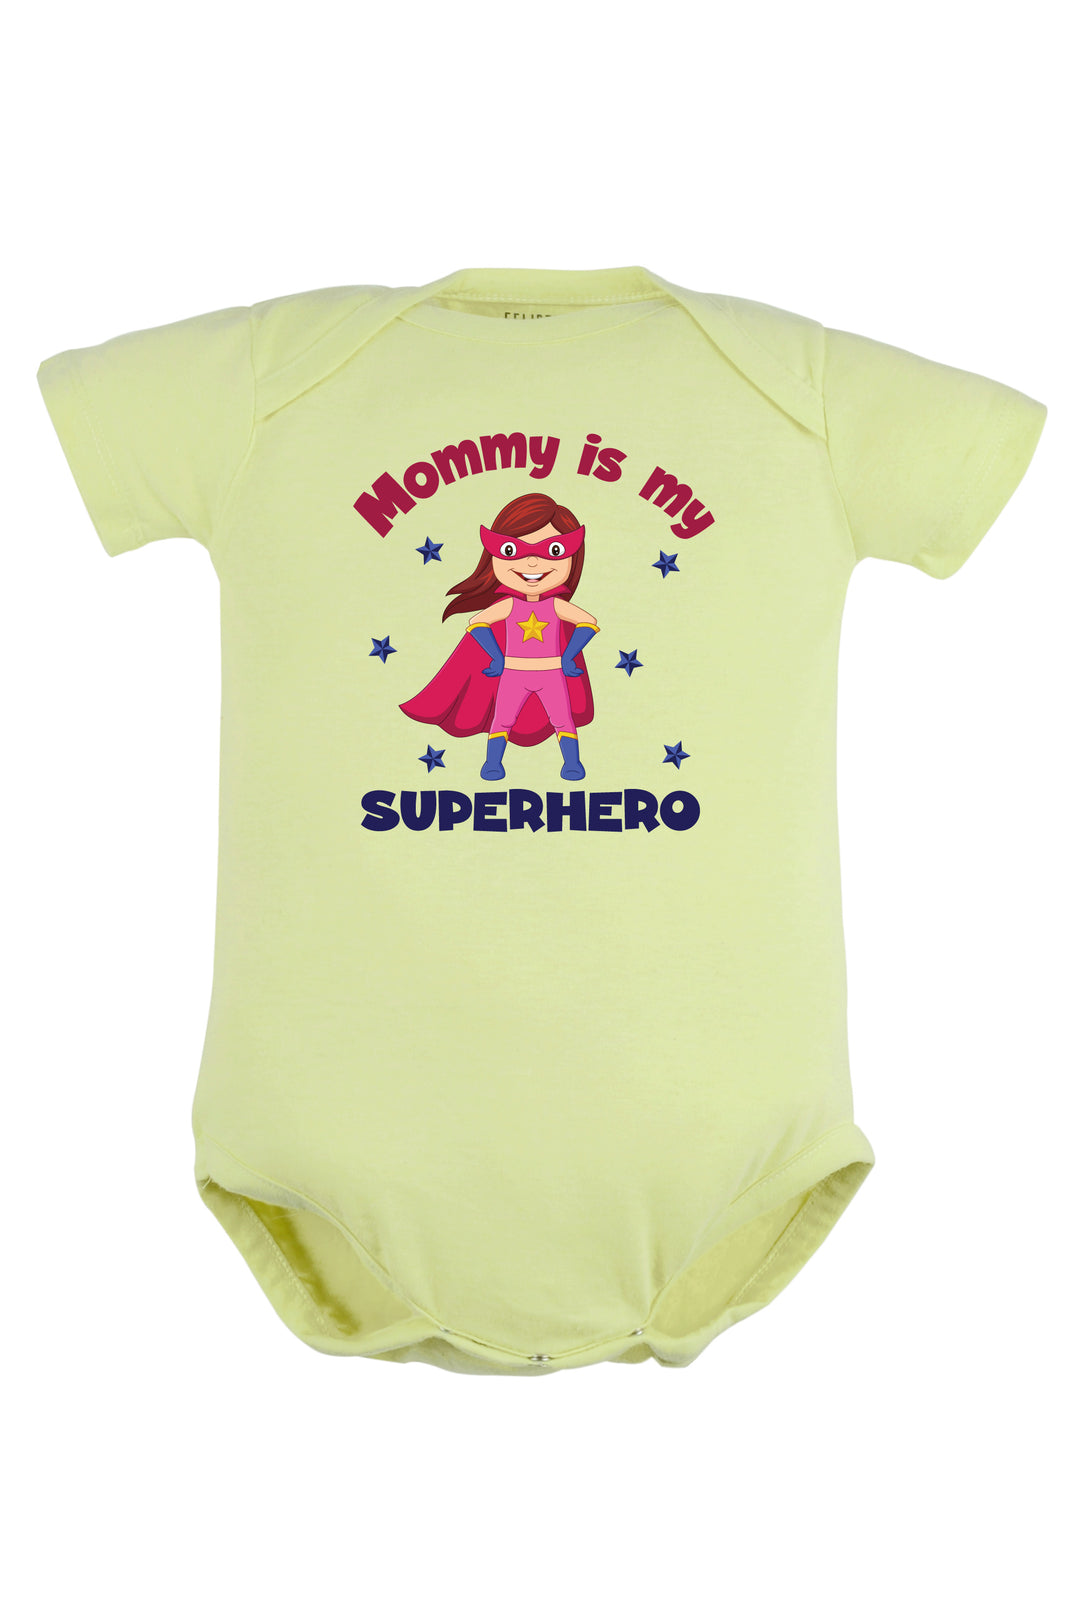 Mommy is My Superhero Baby Romper | Onesies